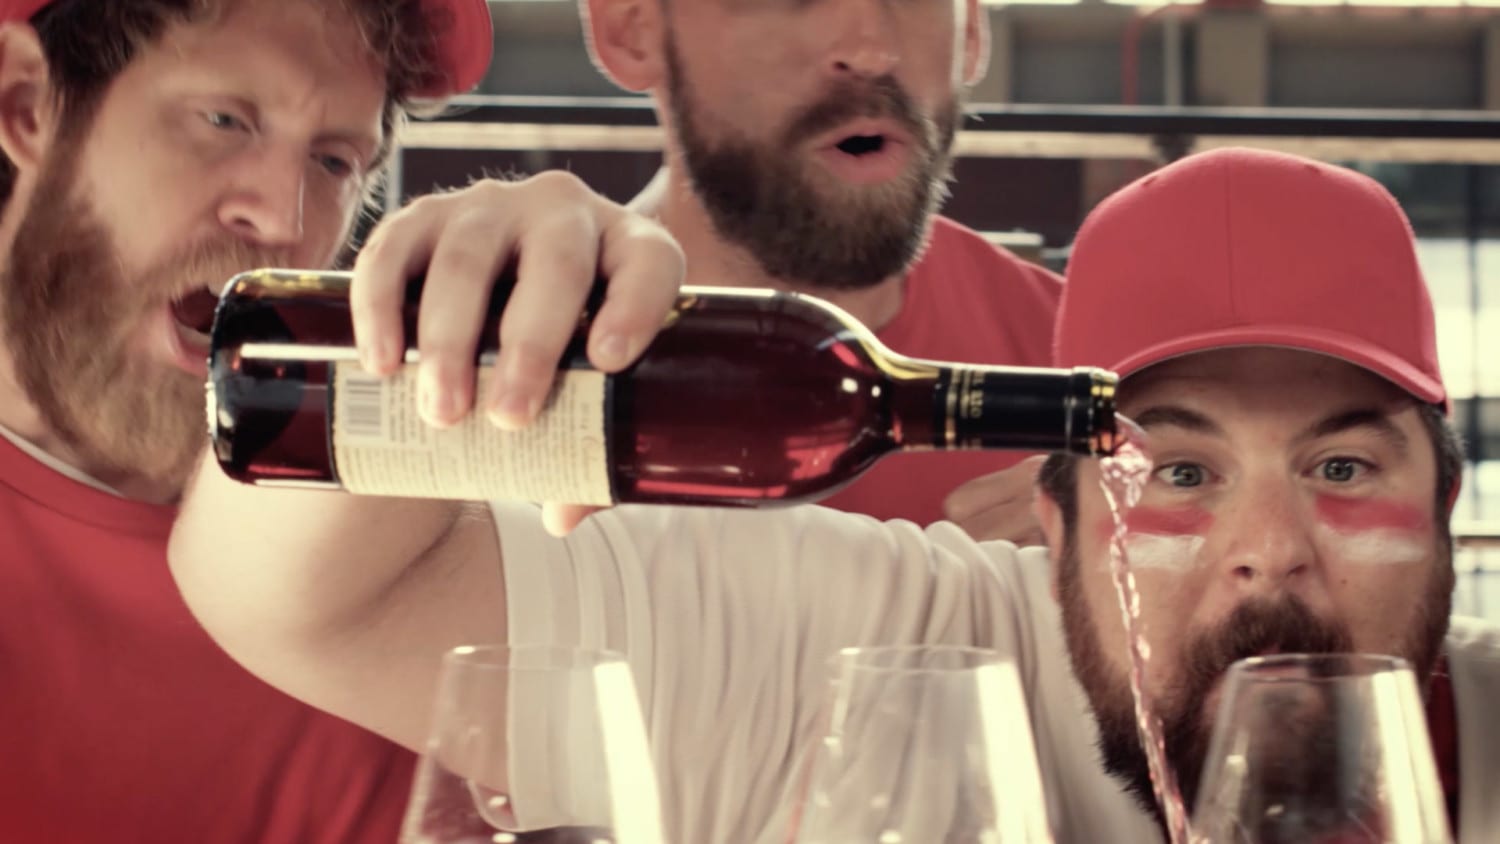 Fan in baseball gear pouring wine with friends